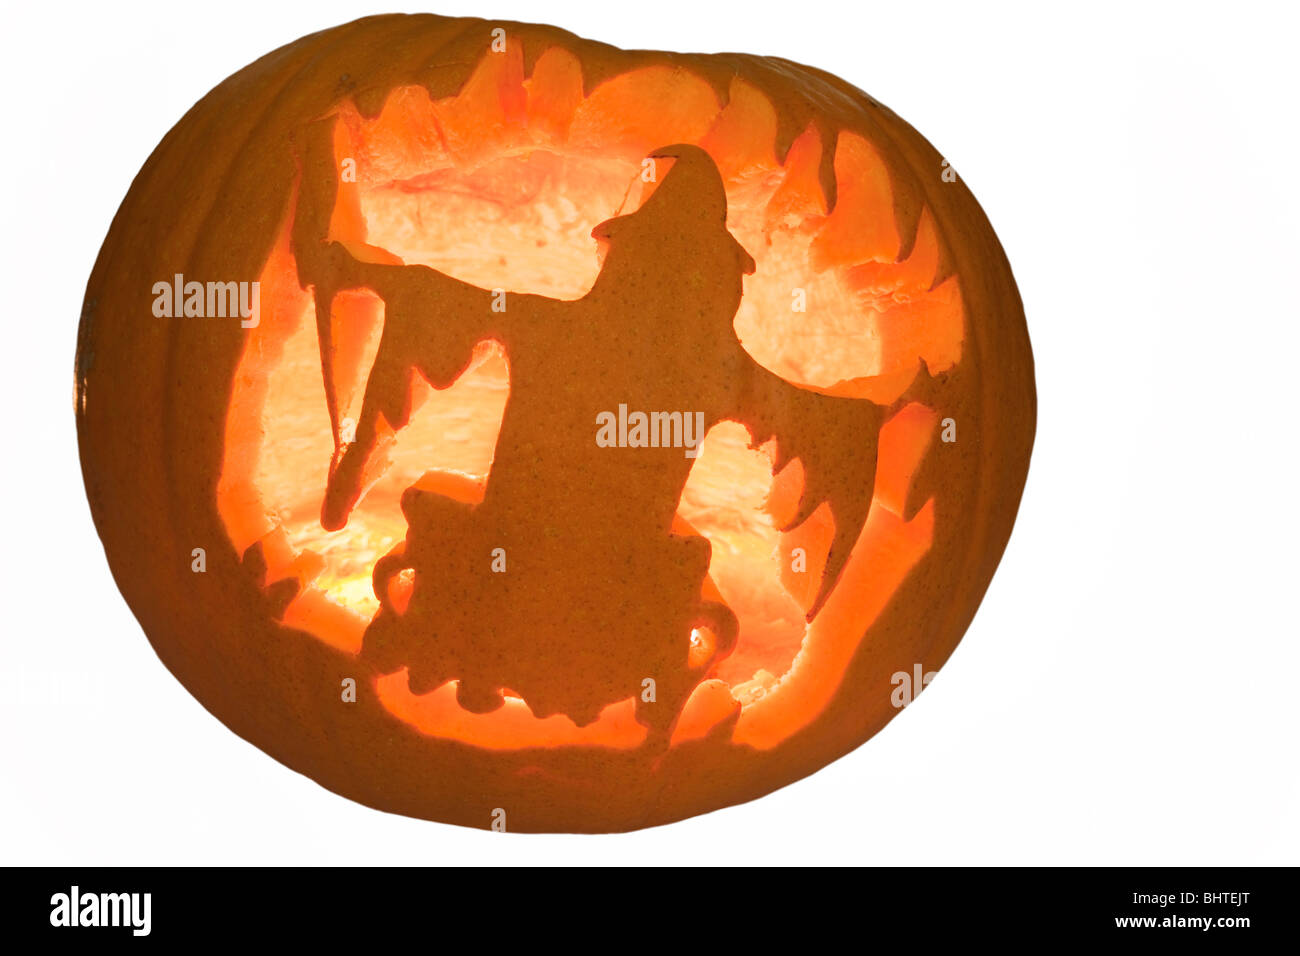 Scary Halloween zucca lanterna con scolpito forma strega e illuminato con una candela incandescente all'interno Foto Stock